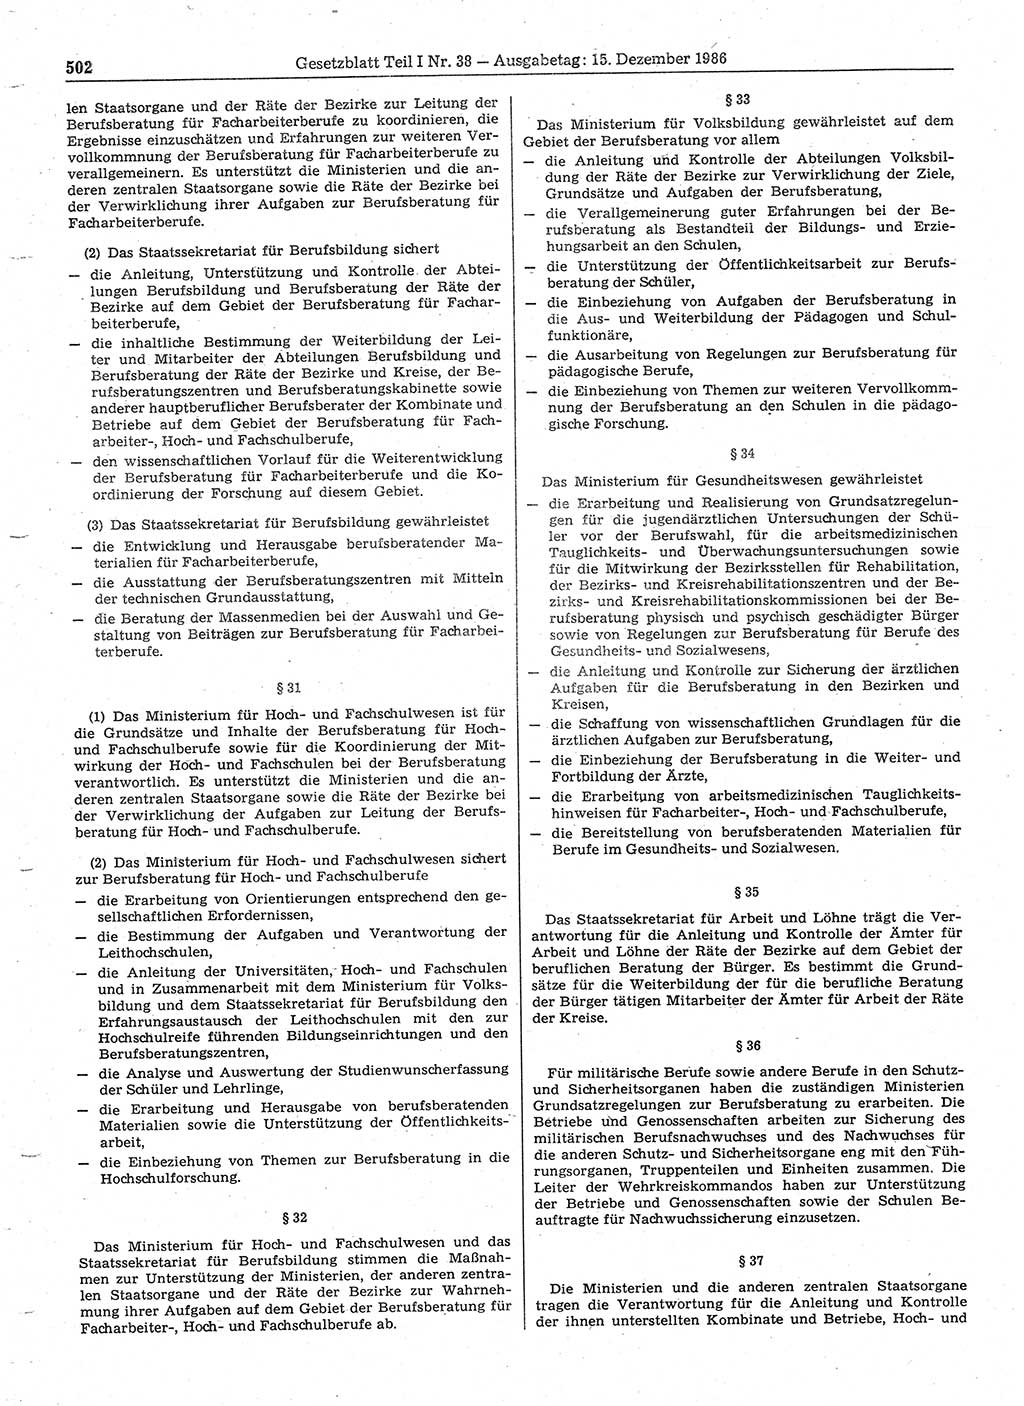 Gesetzblatt (GBl.) der Deutschen Demokratischen Republik (DDR) Teil Ⅰ 1986, Seite 502 (GBl. DDR Ⅰ 1986, S. 502)